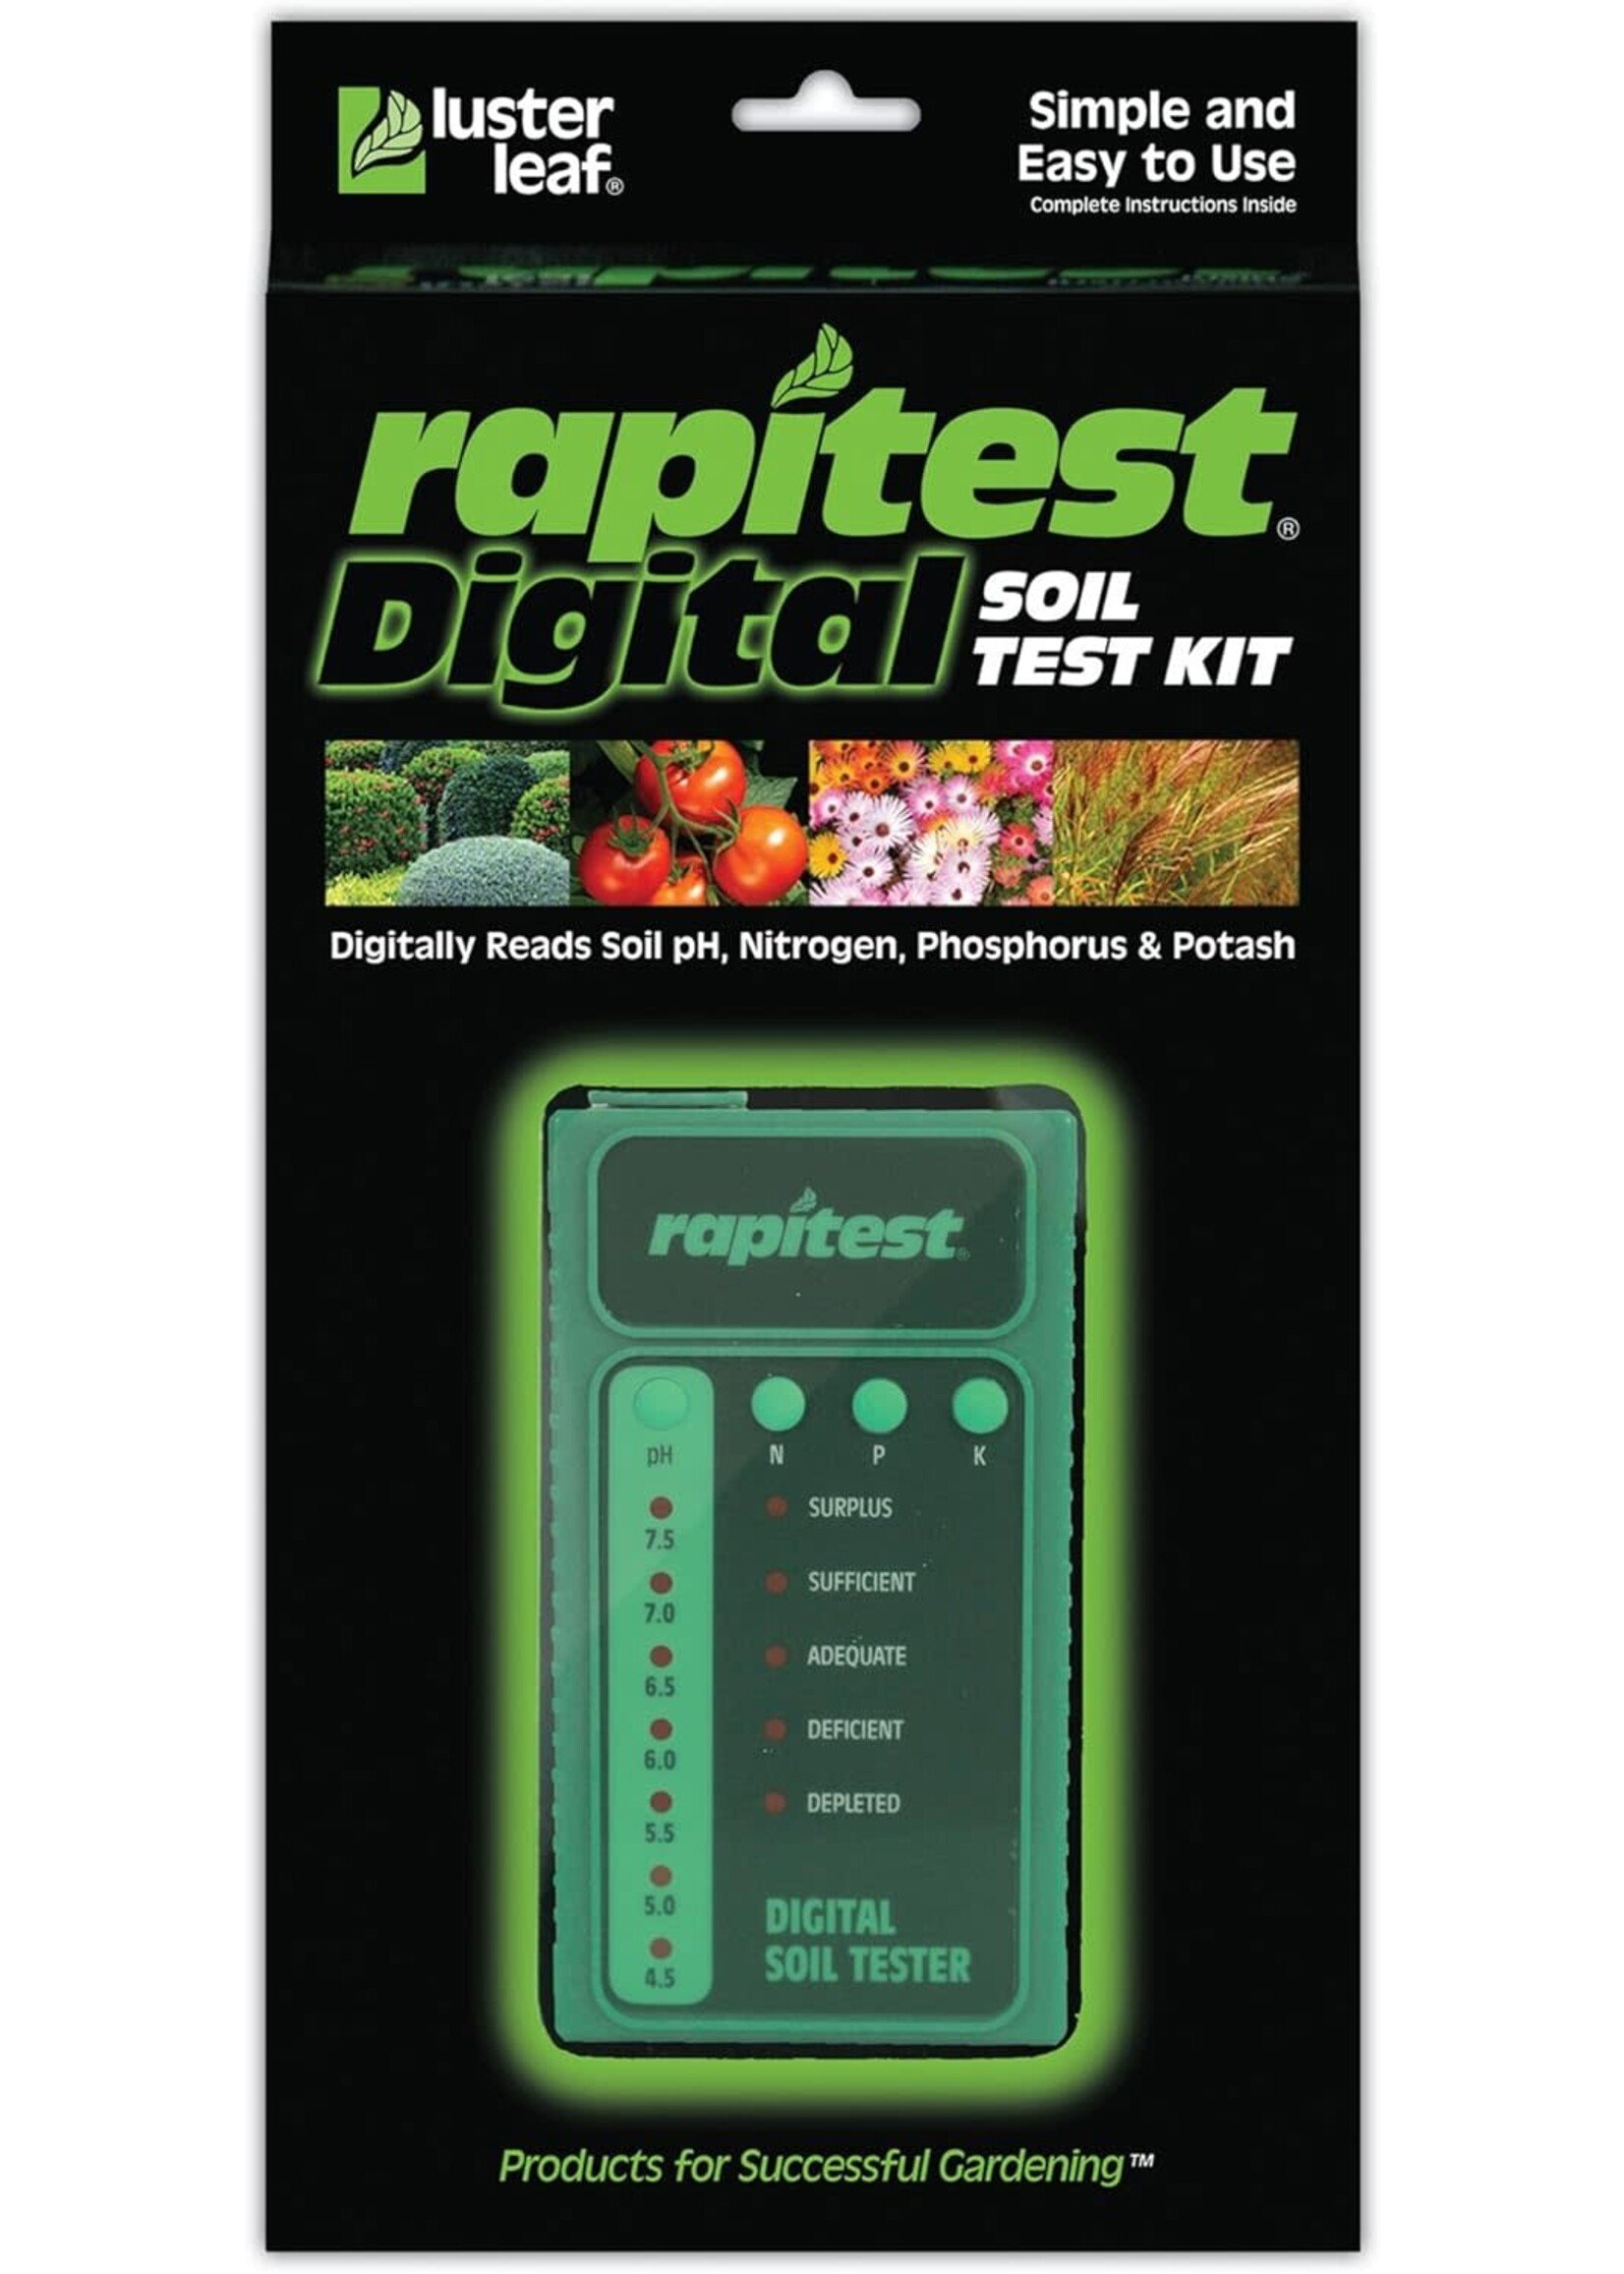 Luster Leaf Rapitest Digital Soil Test Kit, 25 tests